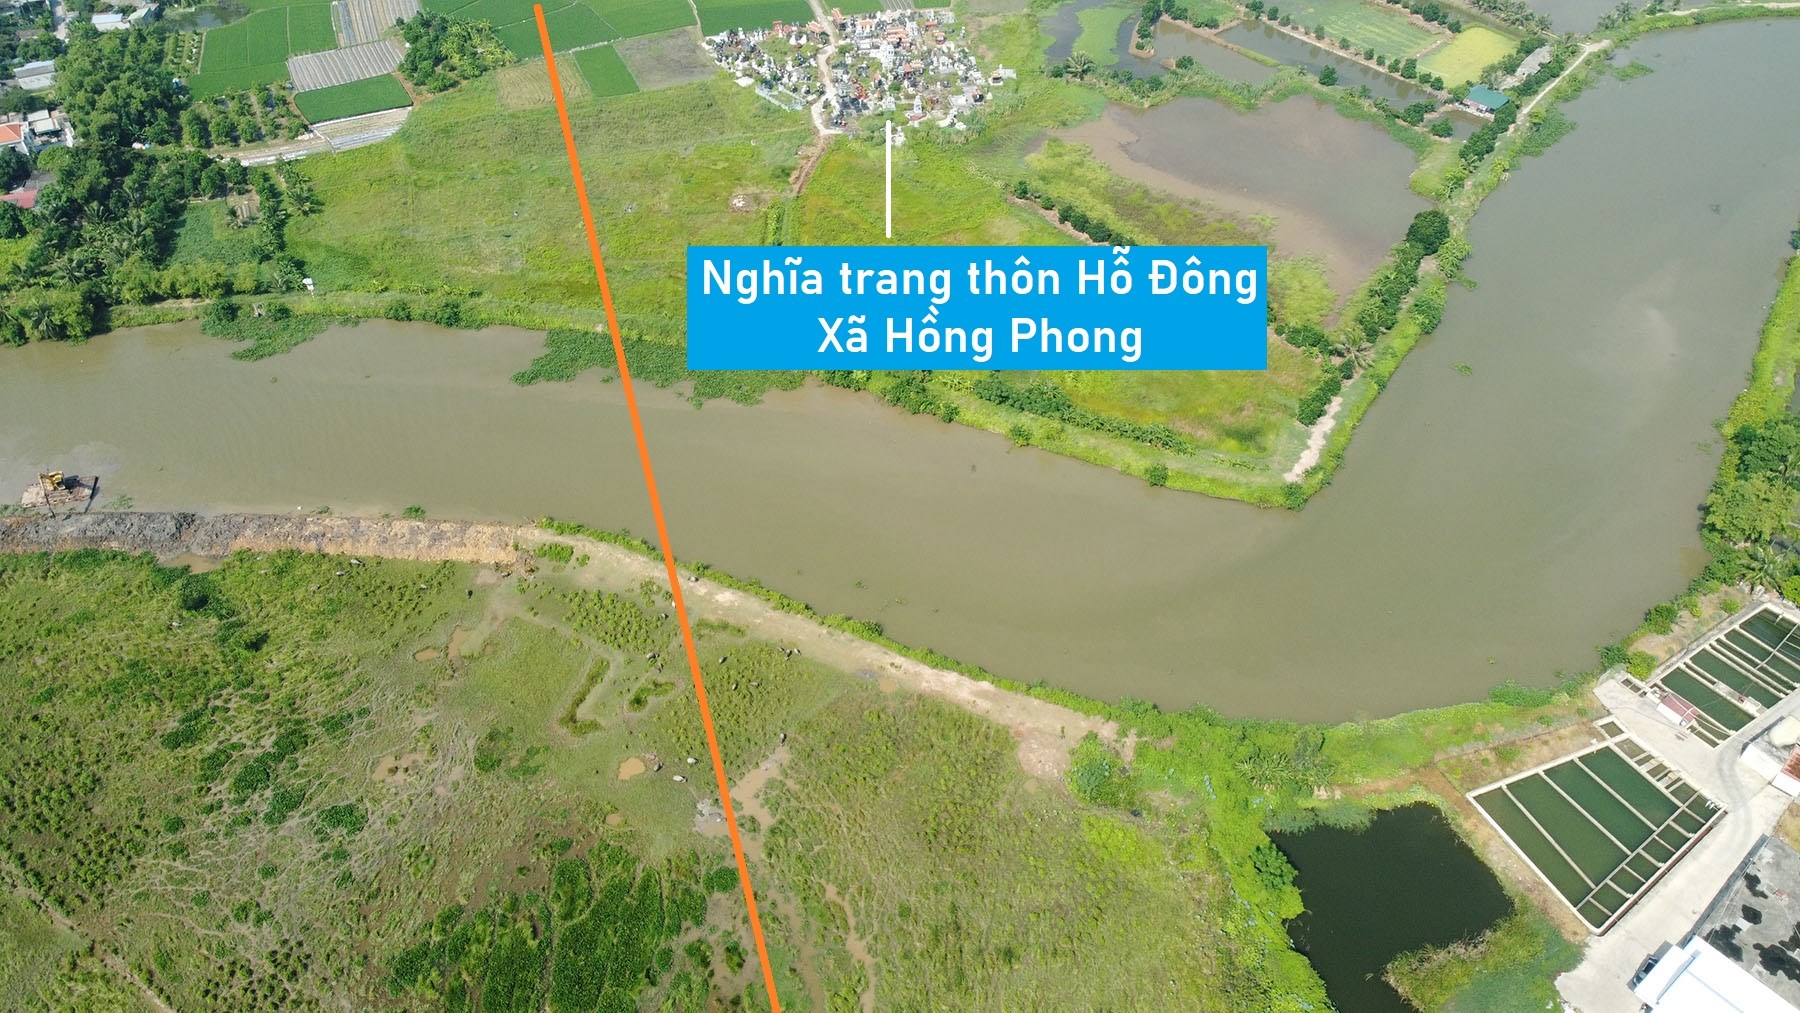 Toàn cảnh vị trí quy hoạch cầu vượt sông Rế ở huyện An Dương, nối xã Hồng Phong ra QL5 Hải Phòng